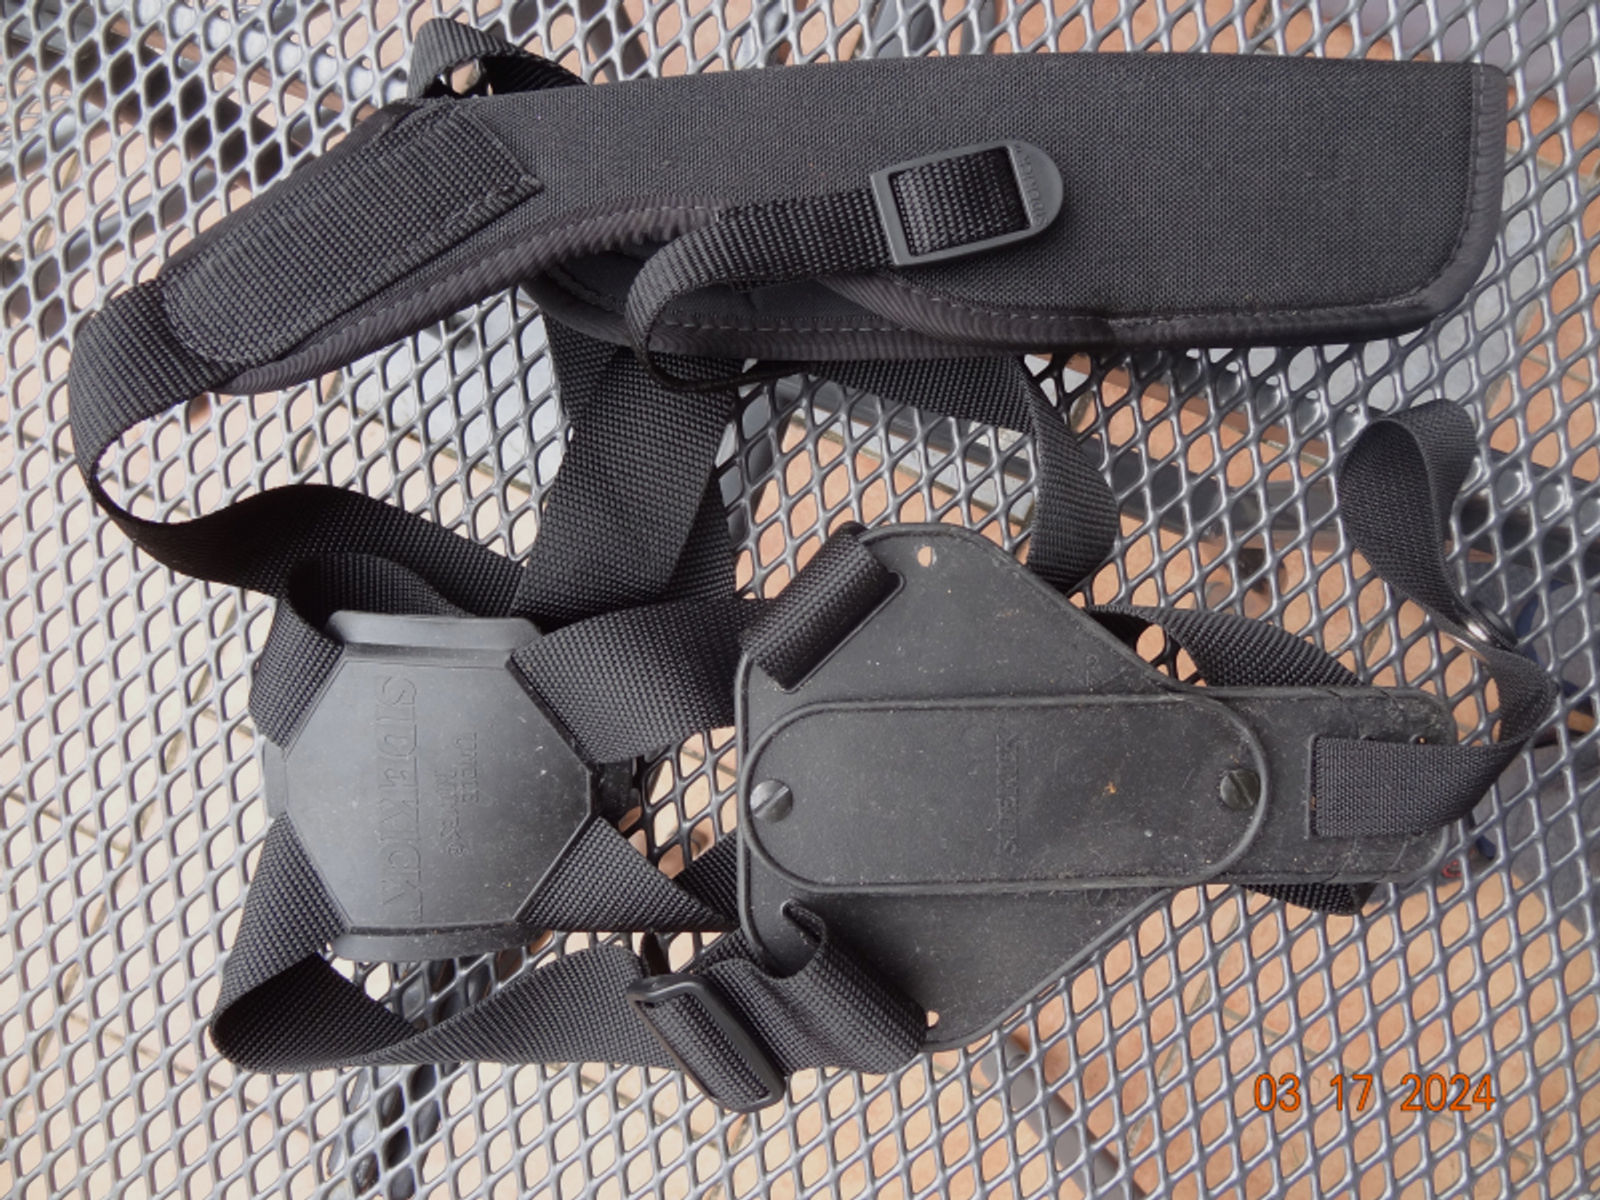 Schulterholster UNCLE MICES für Revolver bis 6 Zoll Lauflänge z.Bsp Smith and Wesson, Ruger, Taurus